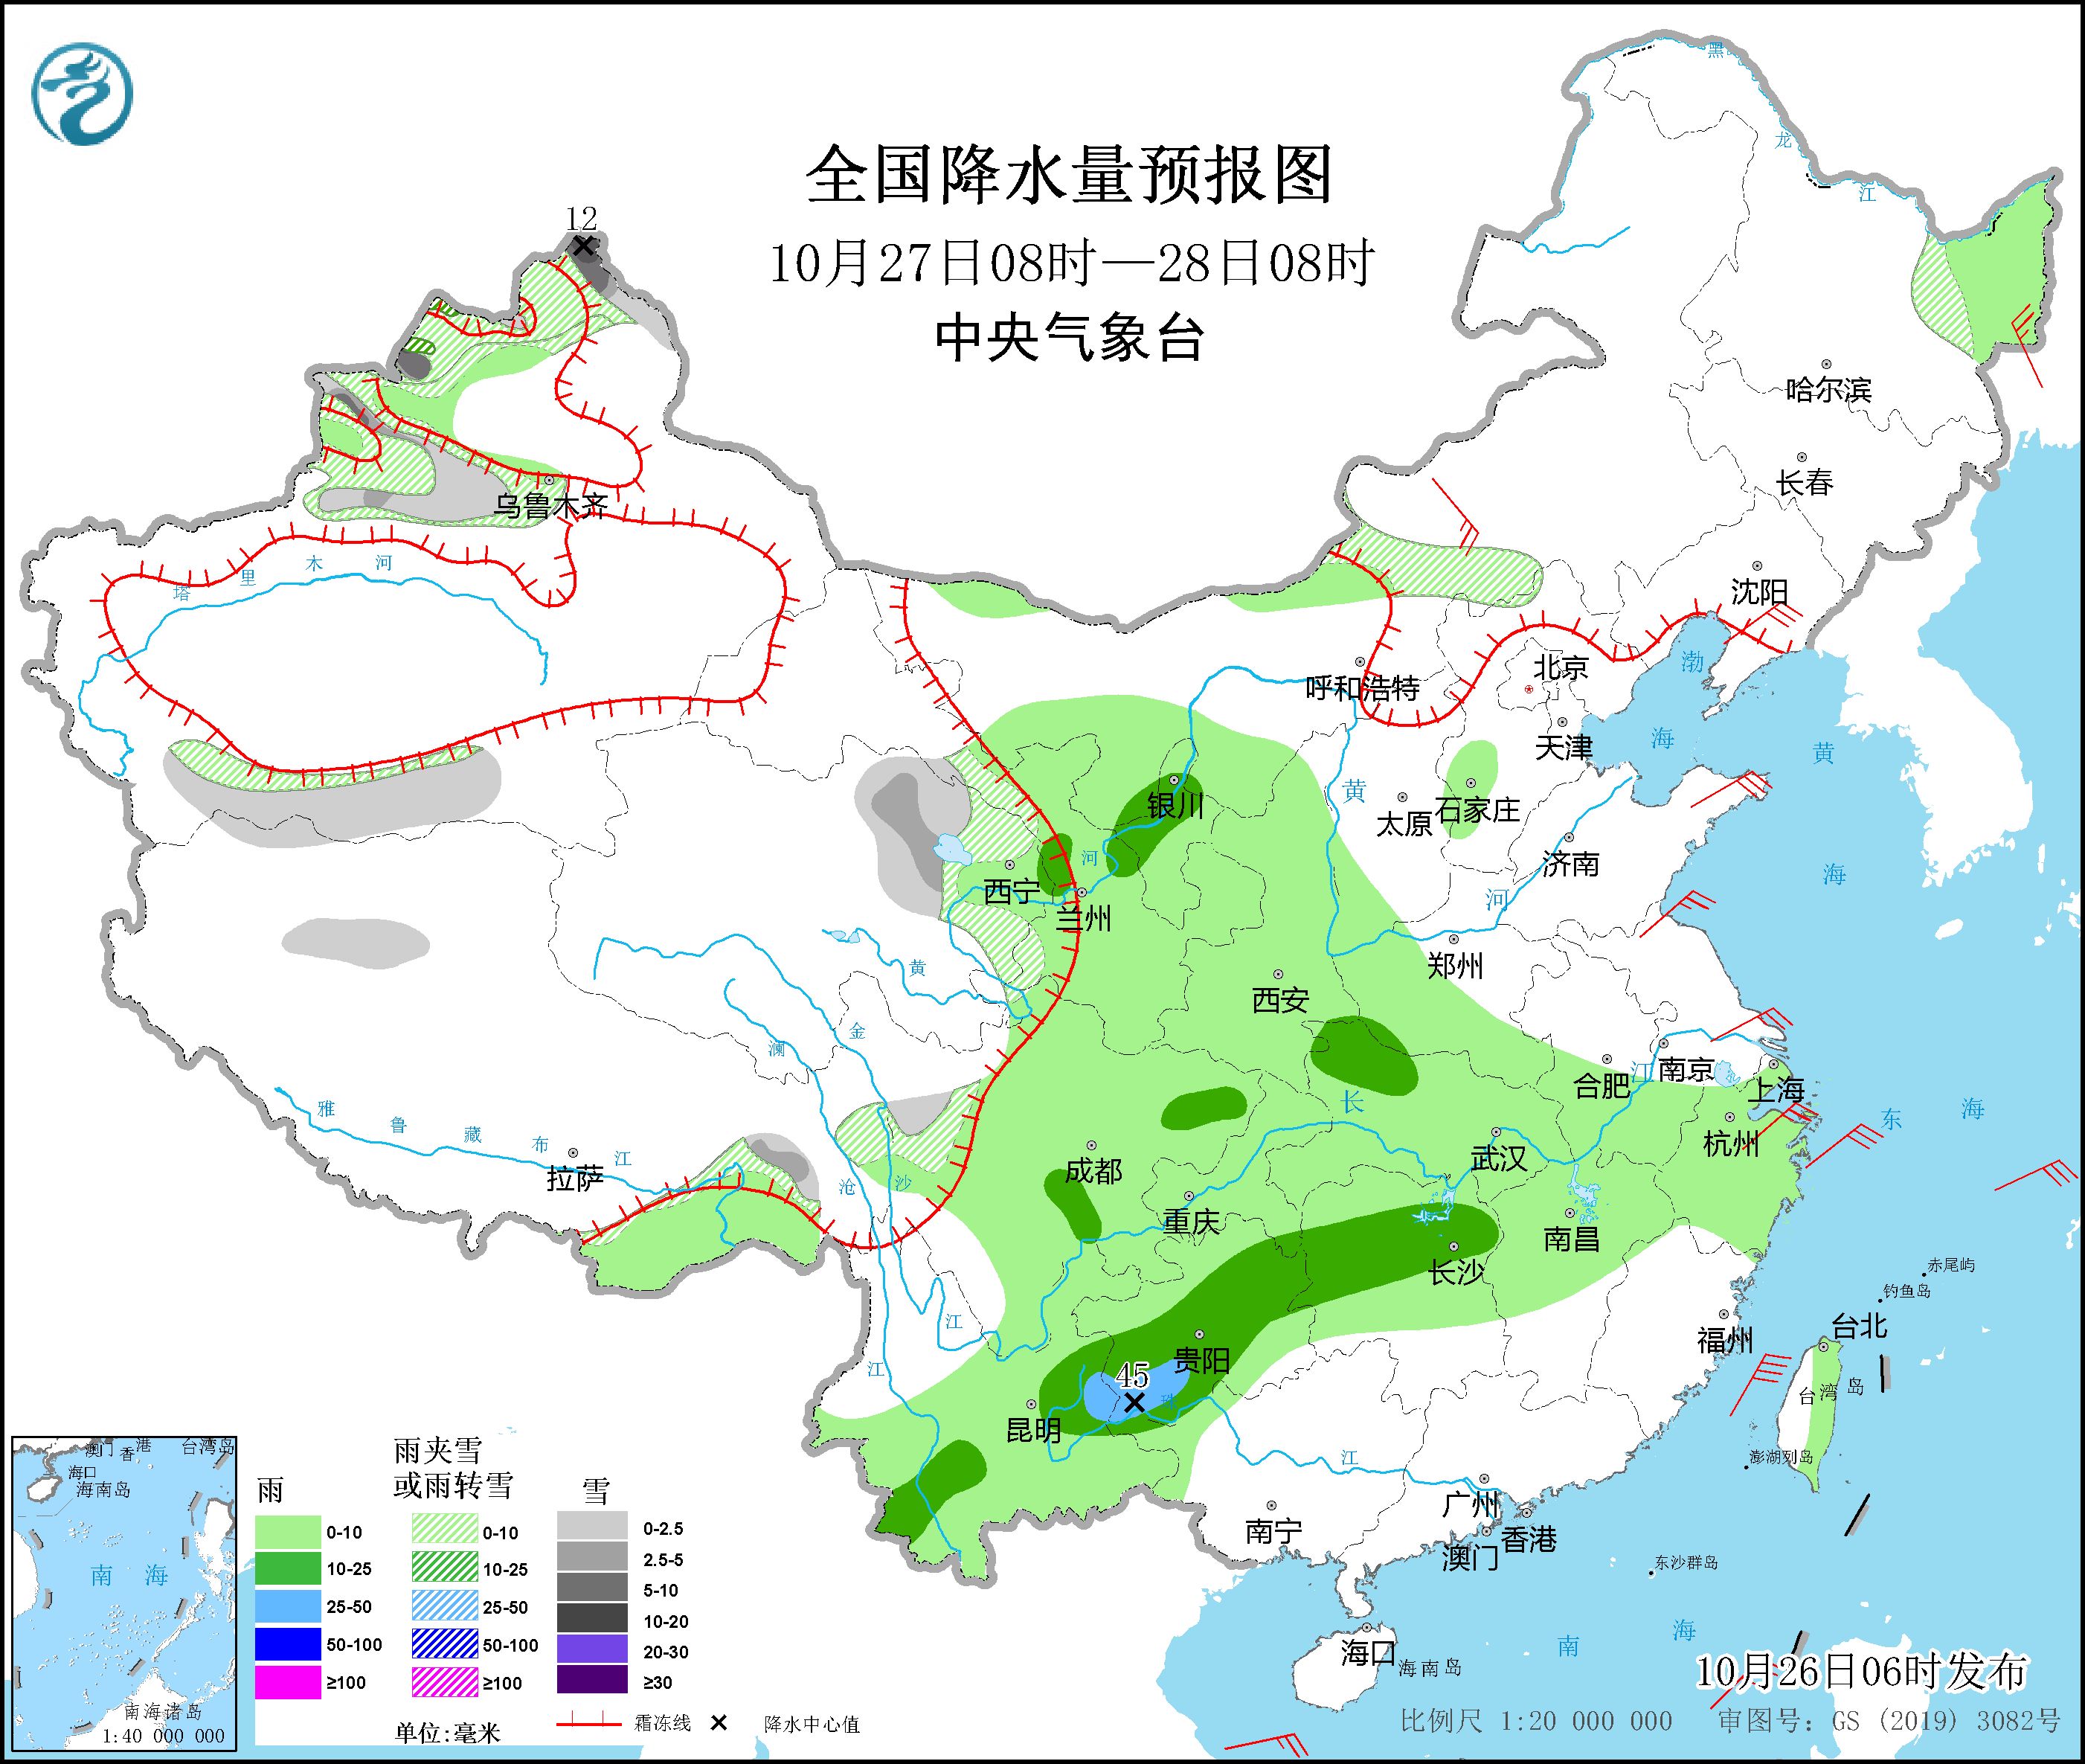 冷空气将影响东北地区和华北 西南地区江汉江南北部等地有阴雨天气